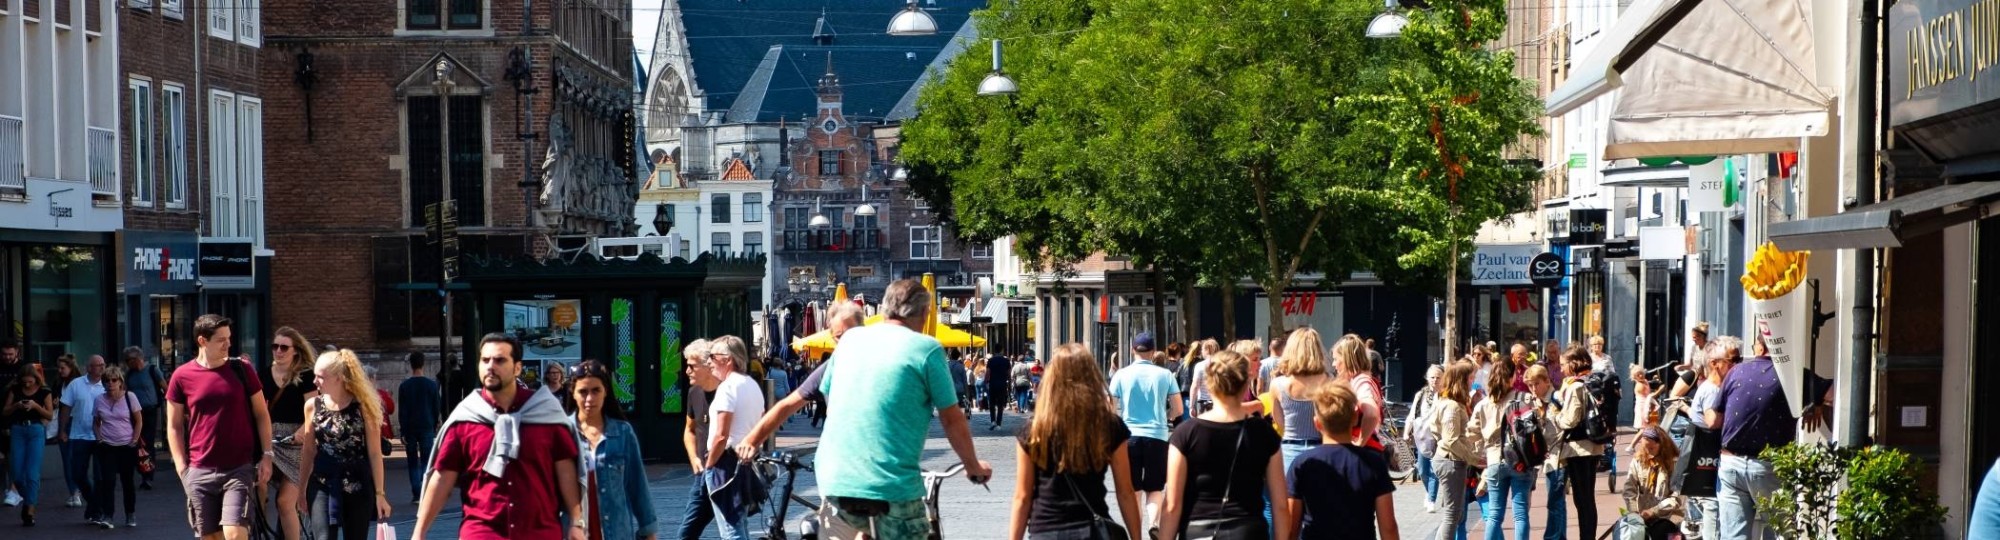 Nijmegen mensen in winkelstraat met kerk op achtergrond